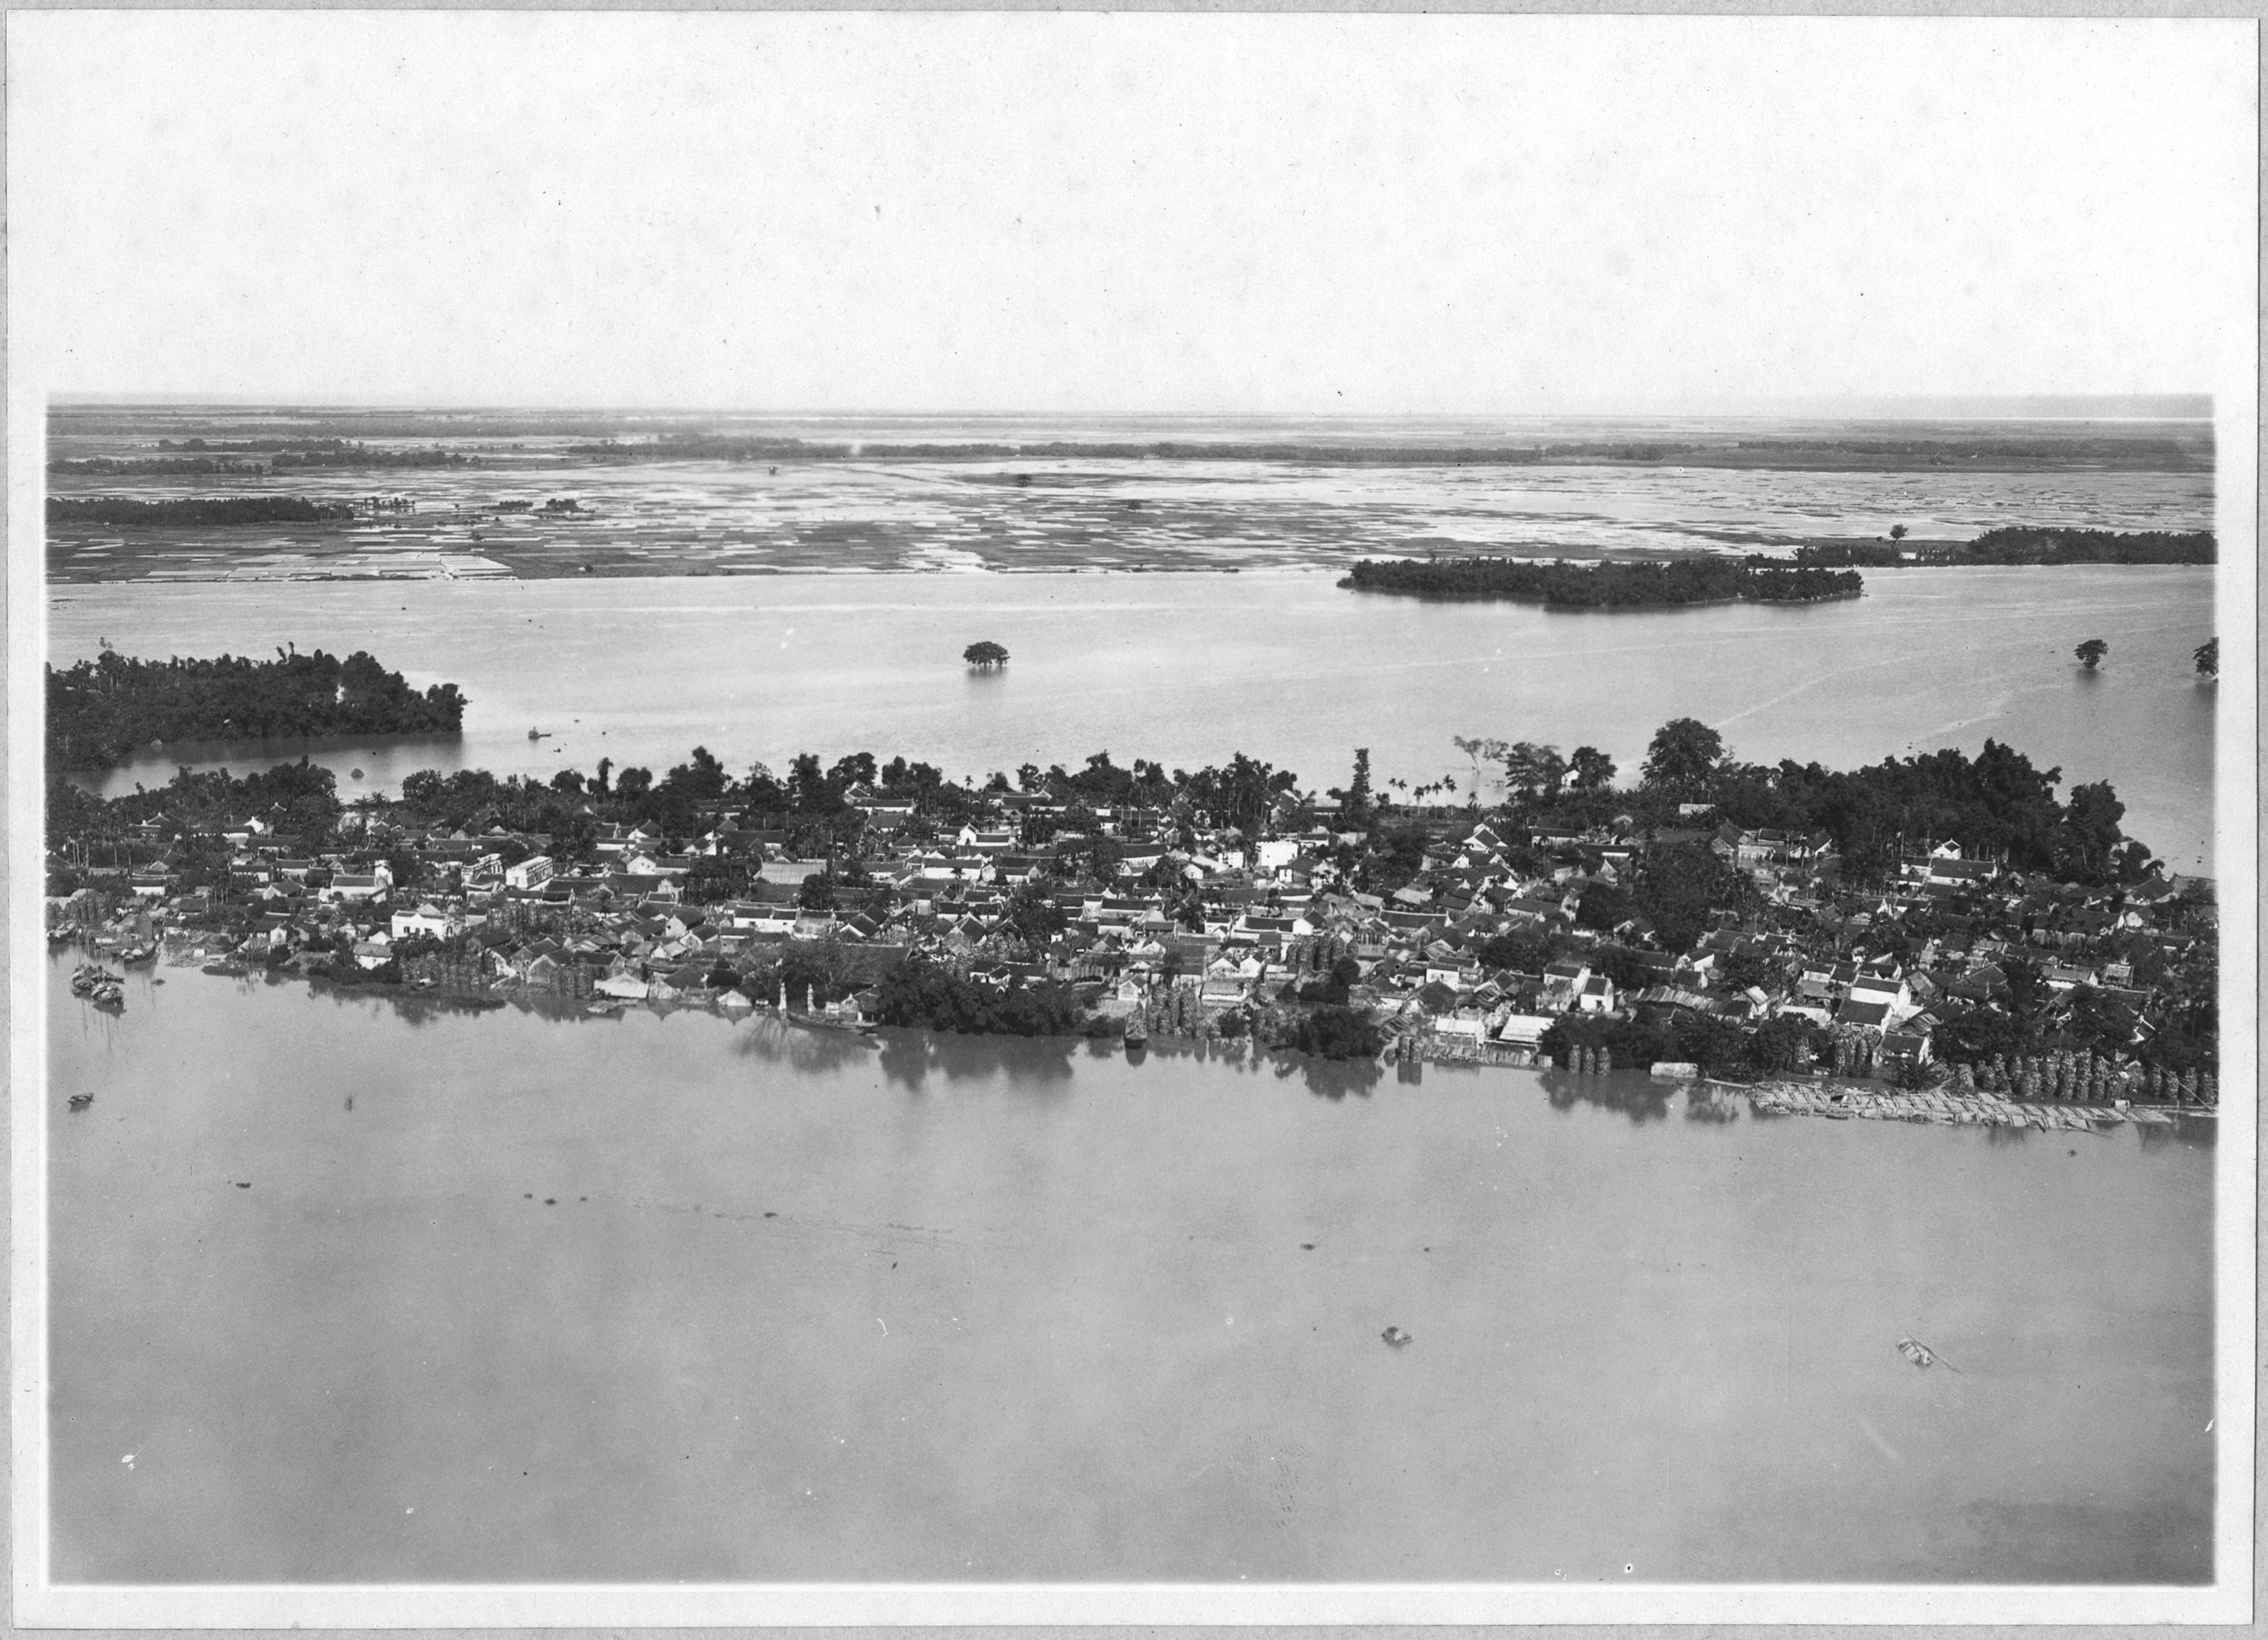 Bat Trang Village during the 1926 flood